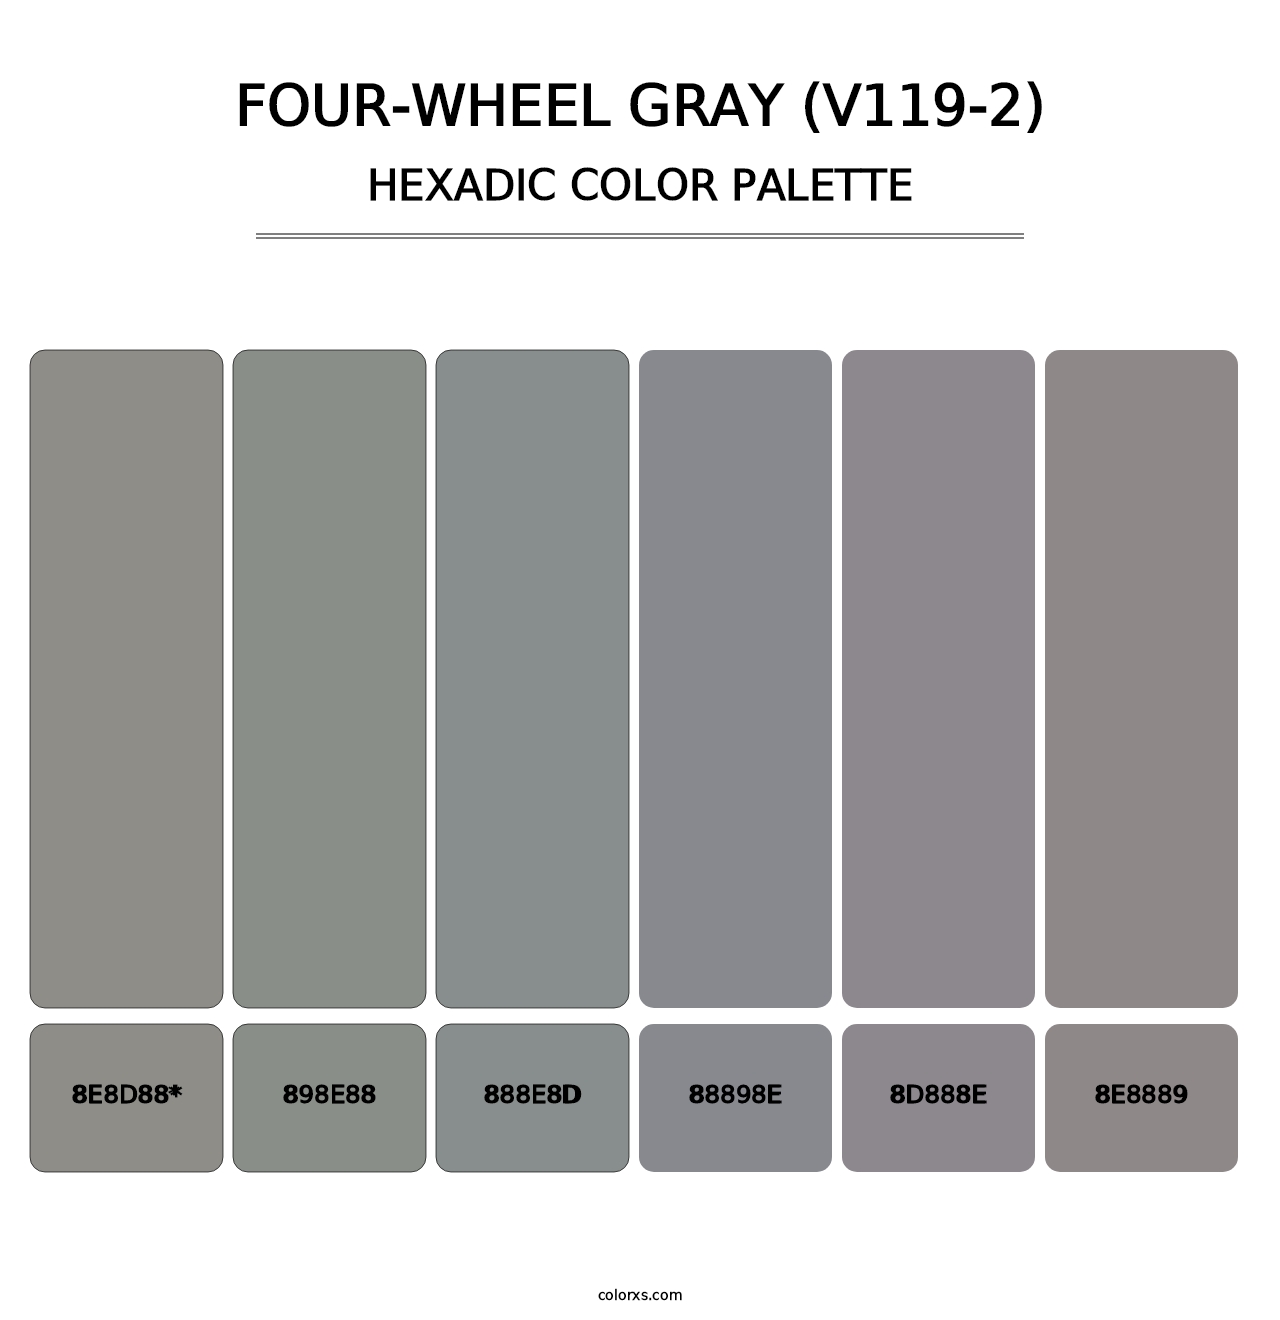 Four-Wheel Gray (V119-2) - Hexadic Color Palette